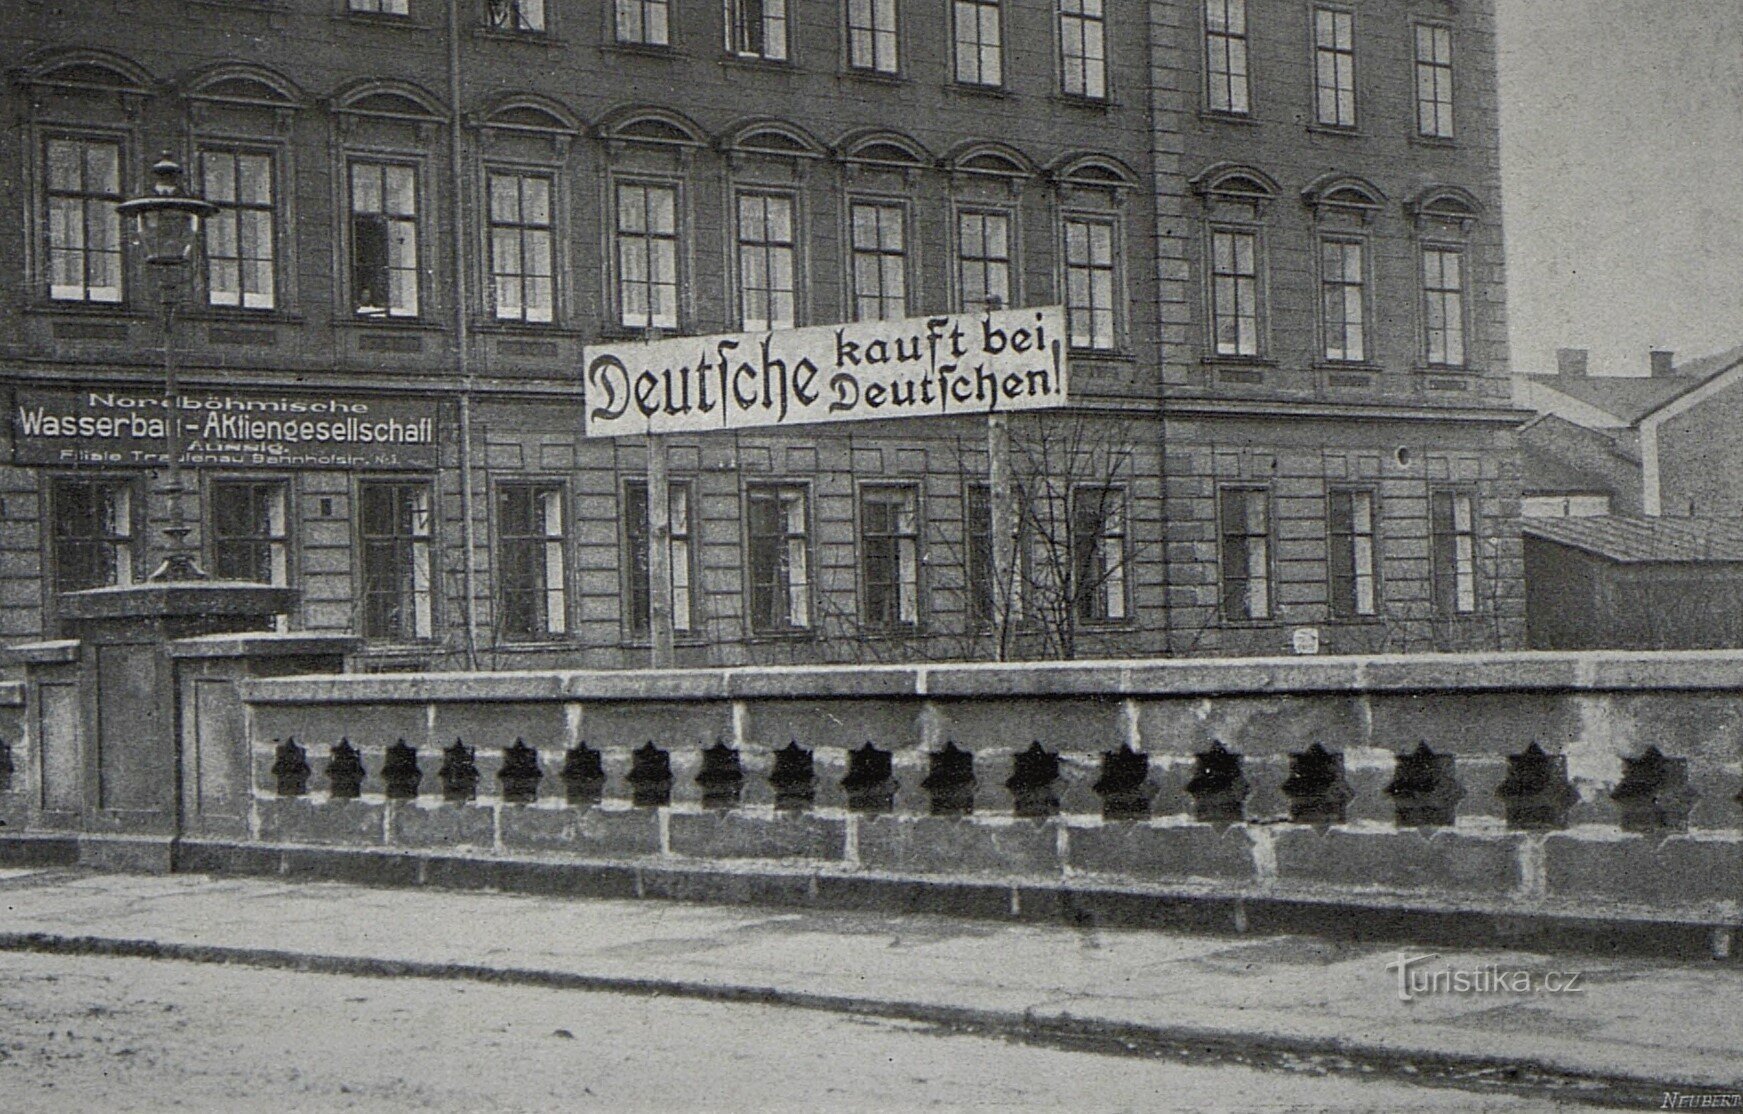 Un tipico esempio di gelosia ceco-tedesca del 1914